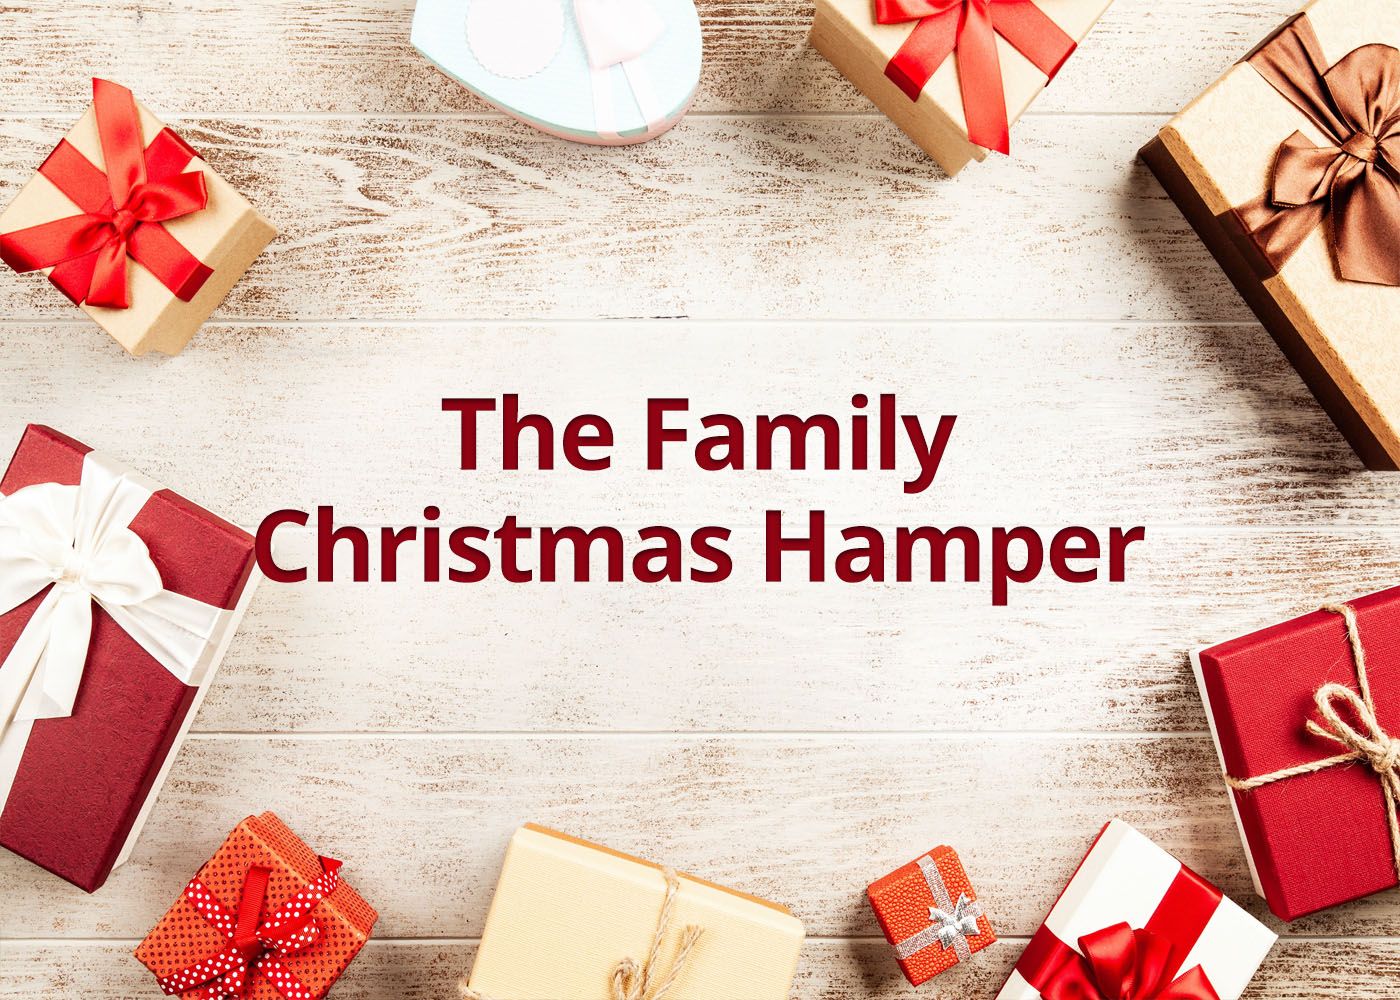 The Family Christmas Hamper - Serves 6-8